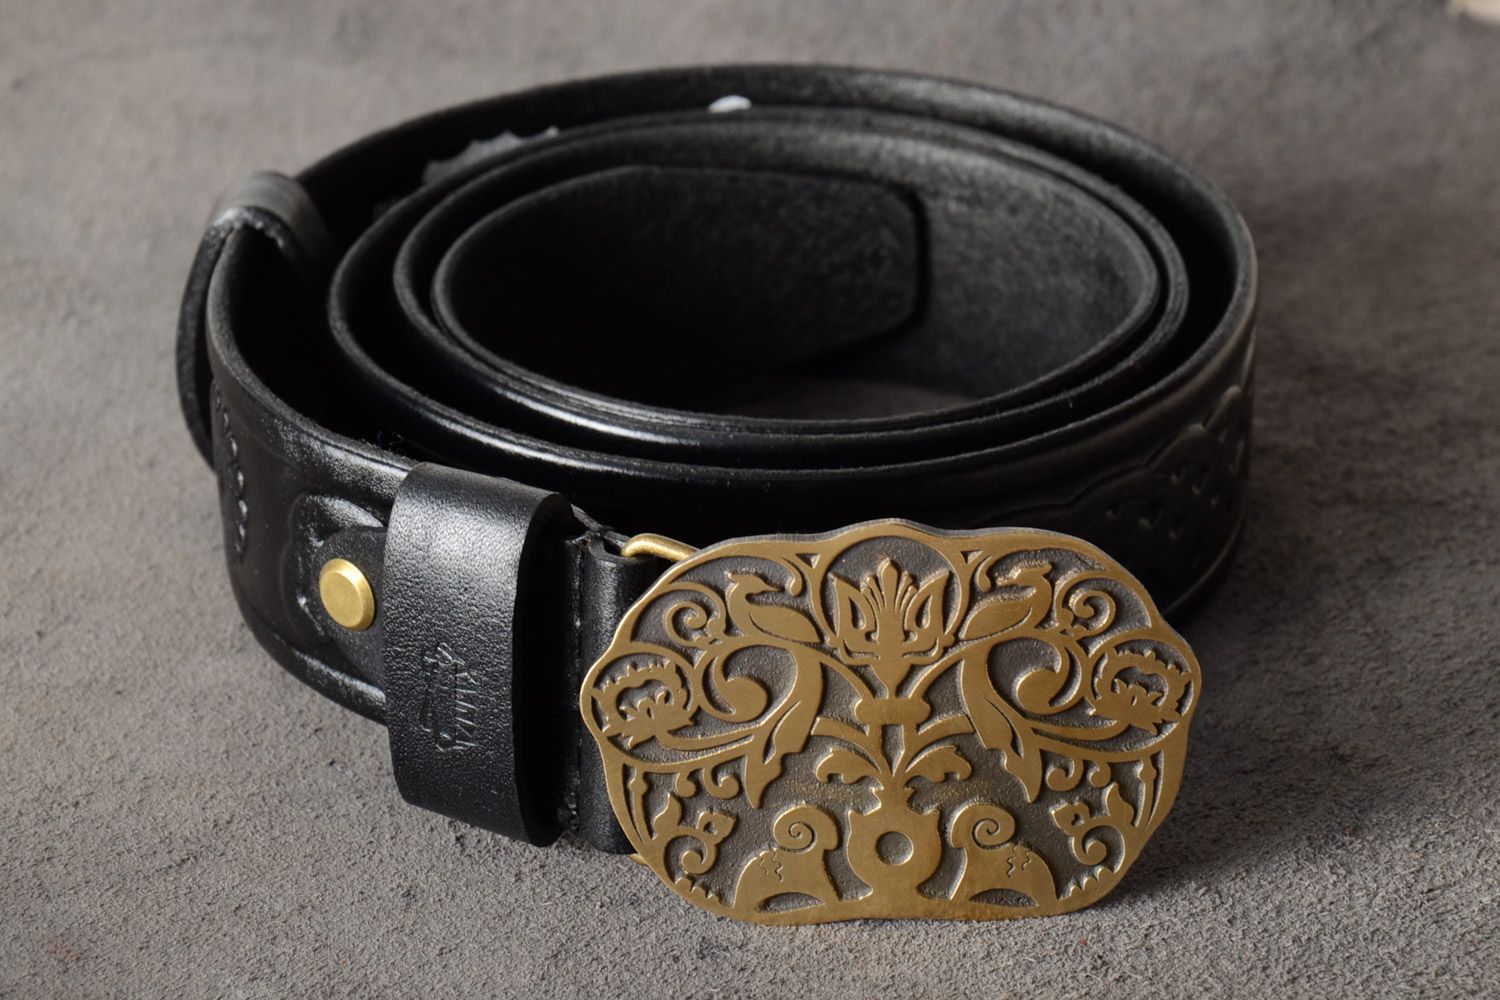 Cinturón de cuero natural con hebilla metálica con relieve artesanal foto 1